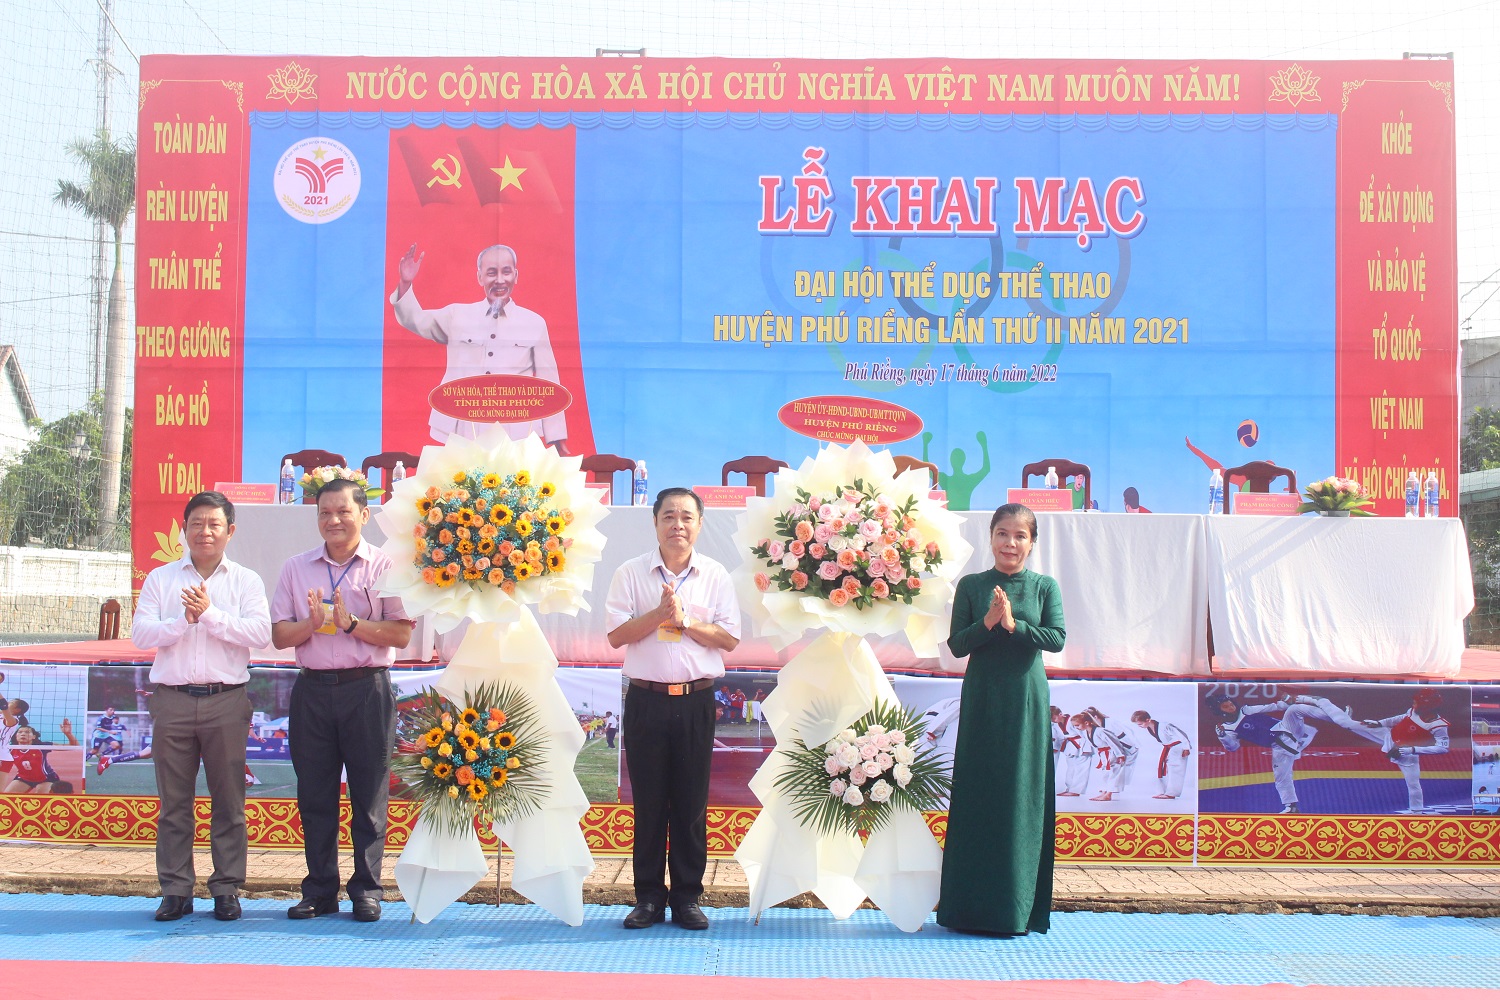 Khai mạc Đại hội Thể dục Thể thao huyện Phú Riềng lần thứ II, năm 2021.